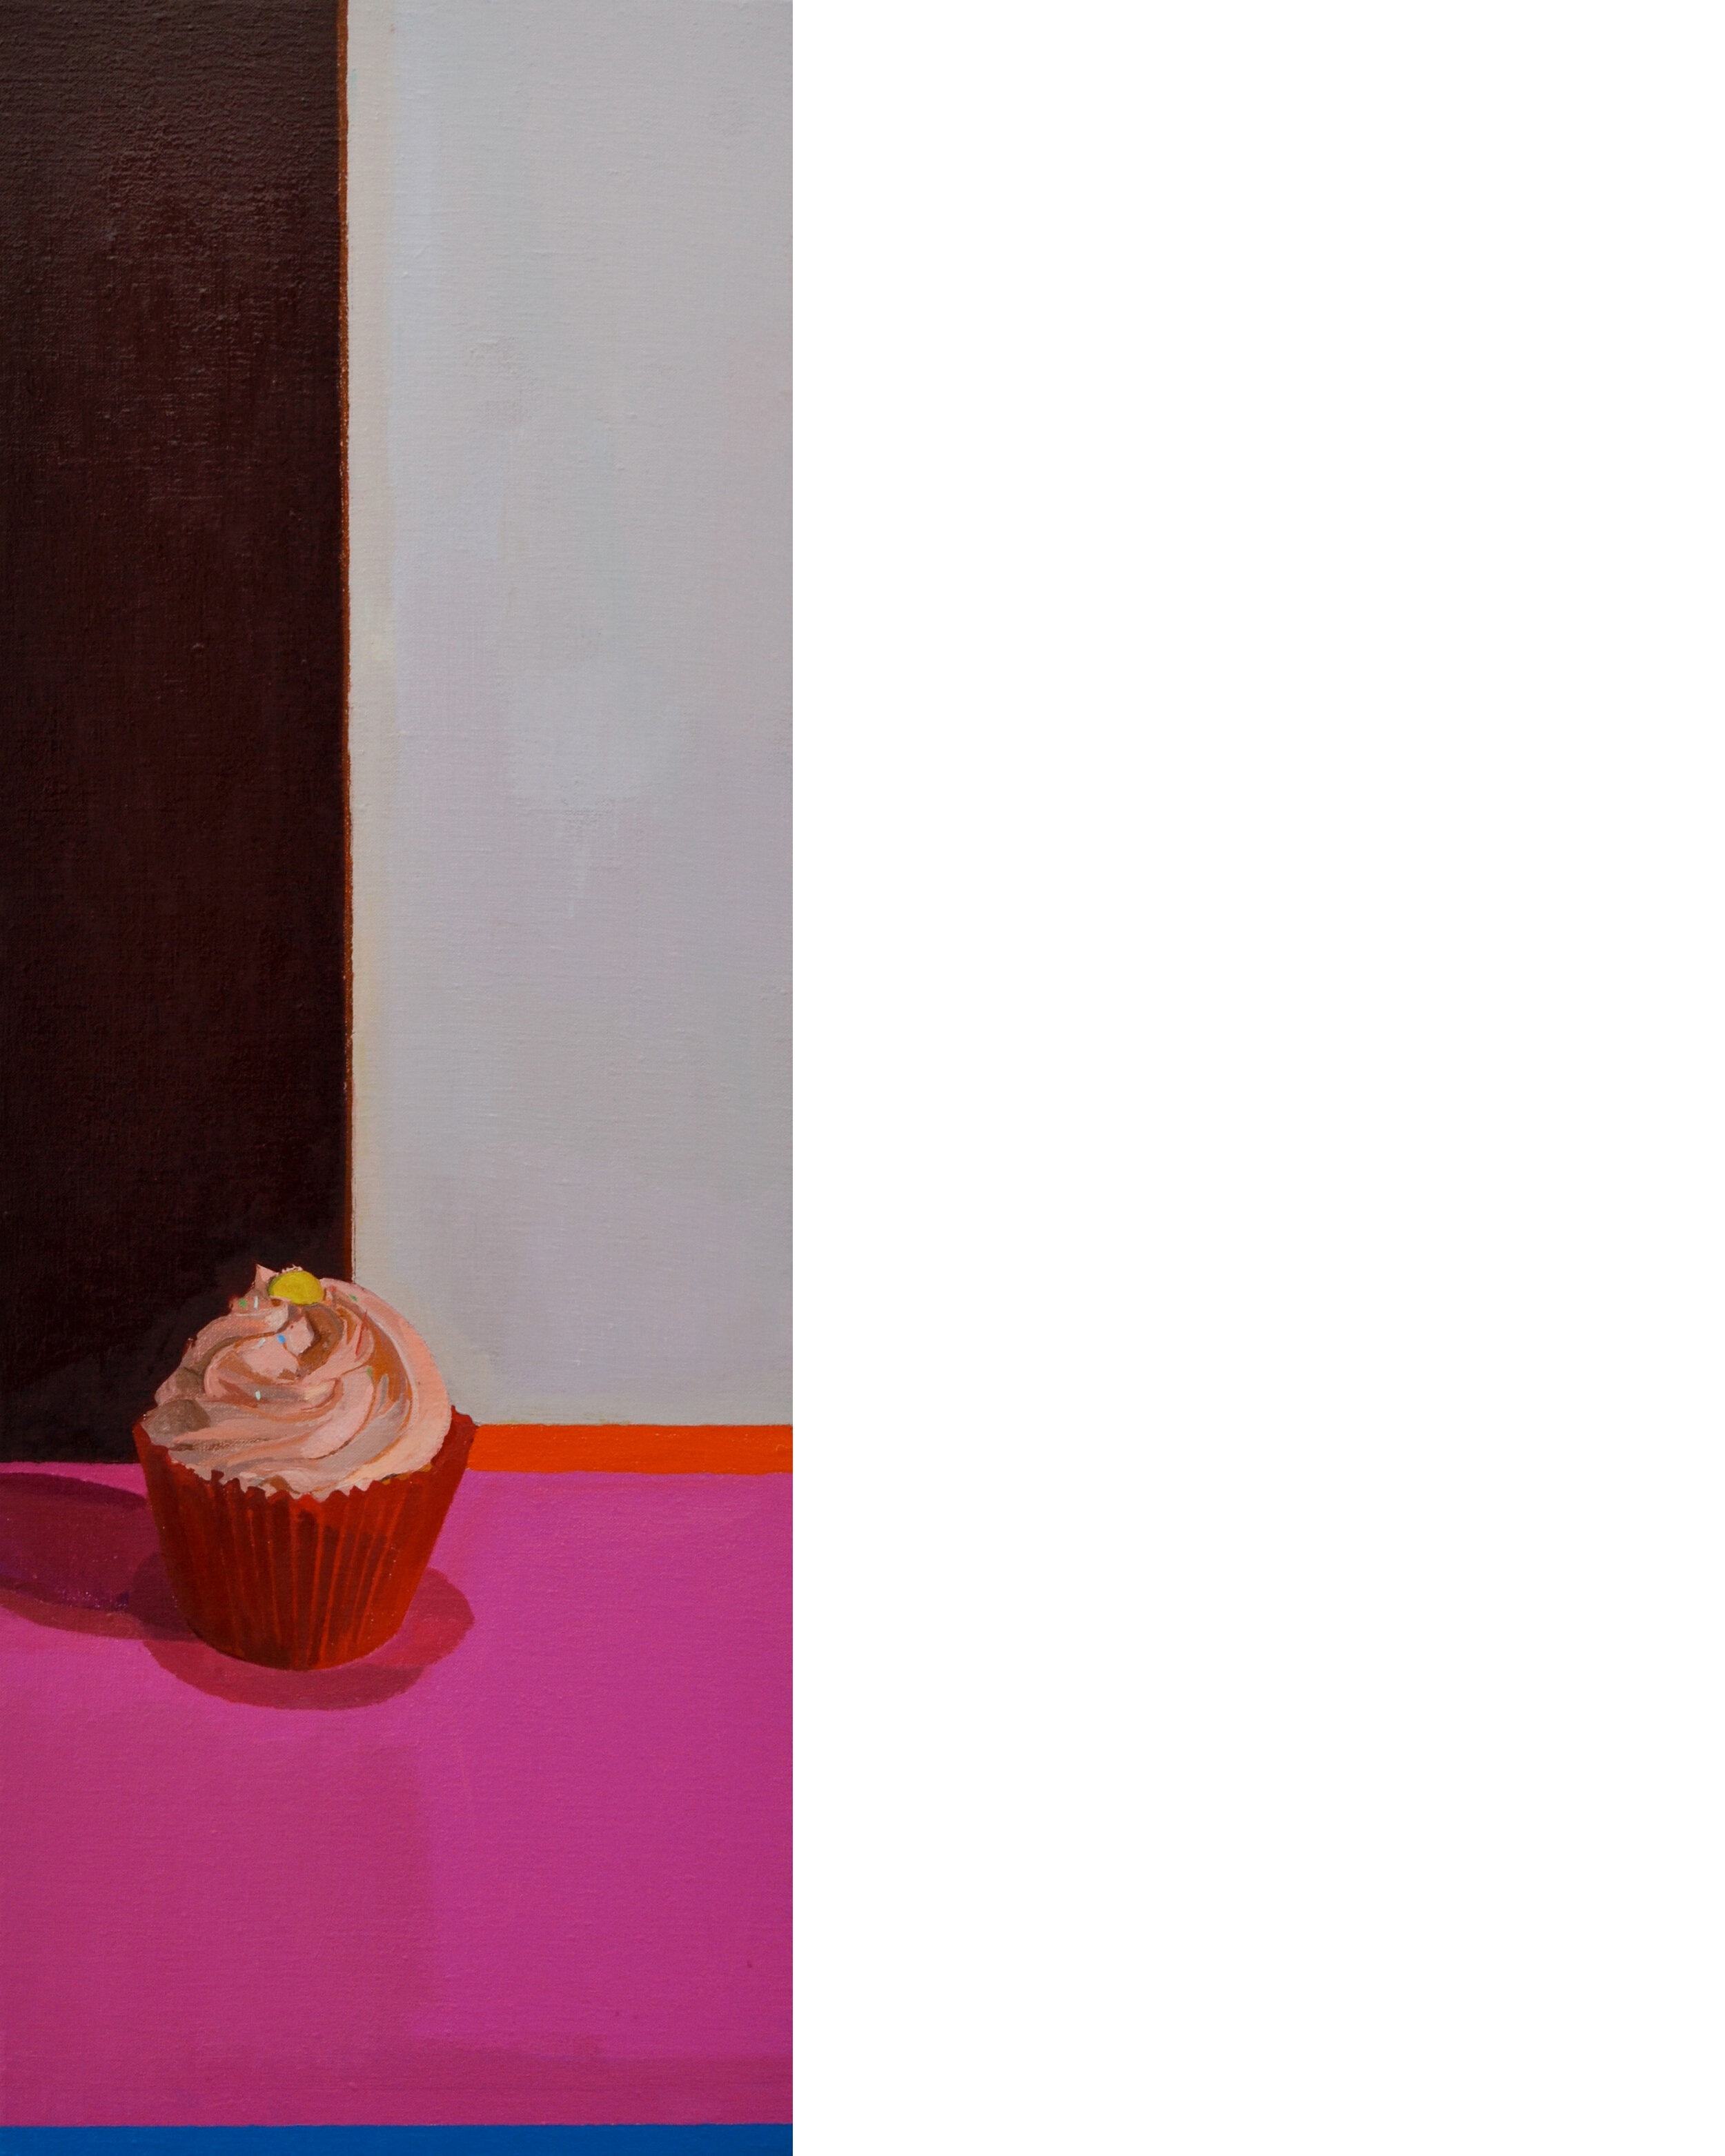  Cupcake  Oil on Linen  34cm x 84cm  2013   